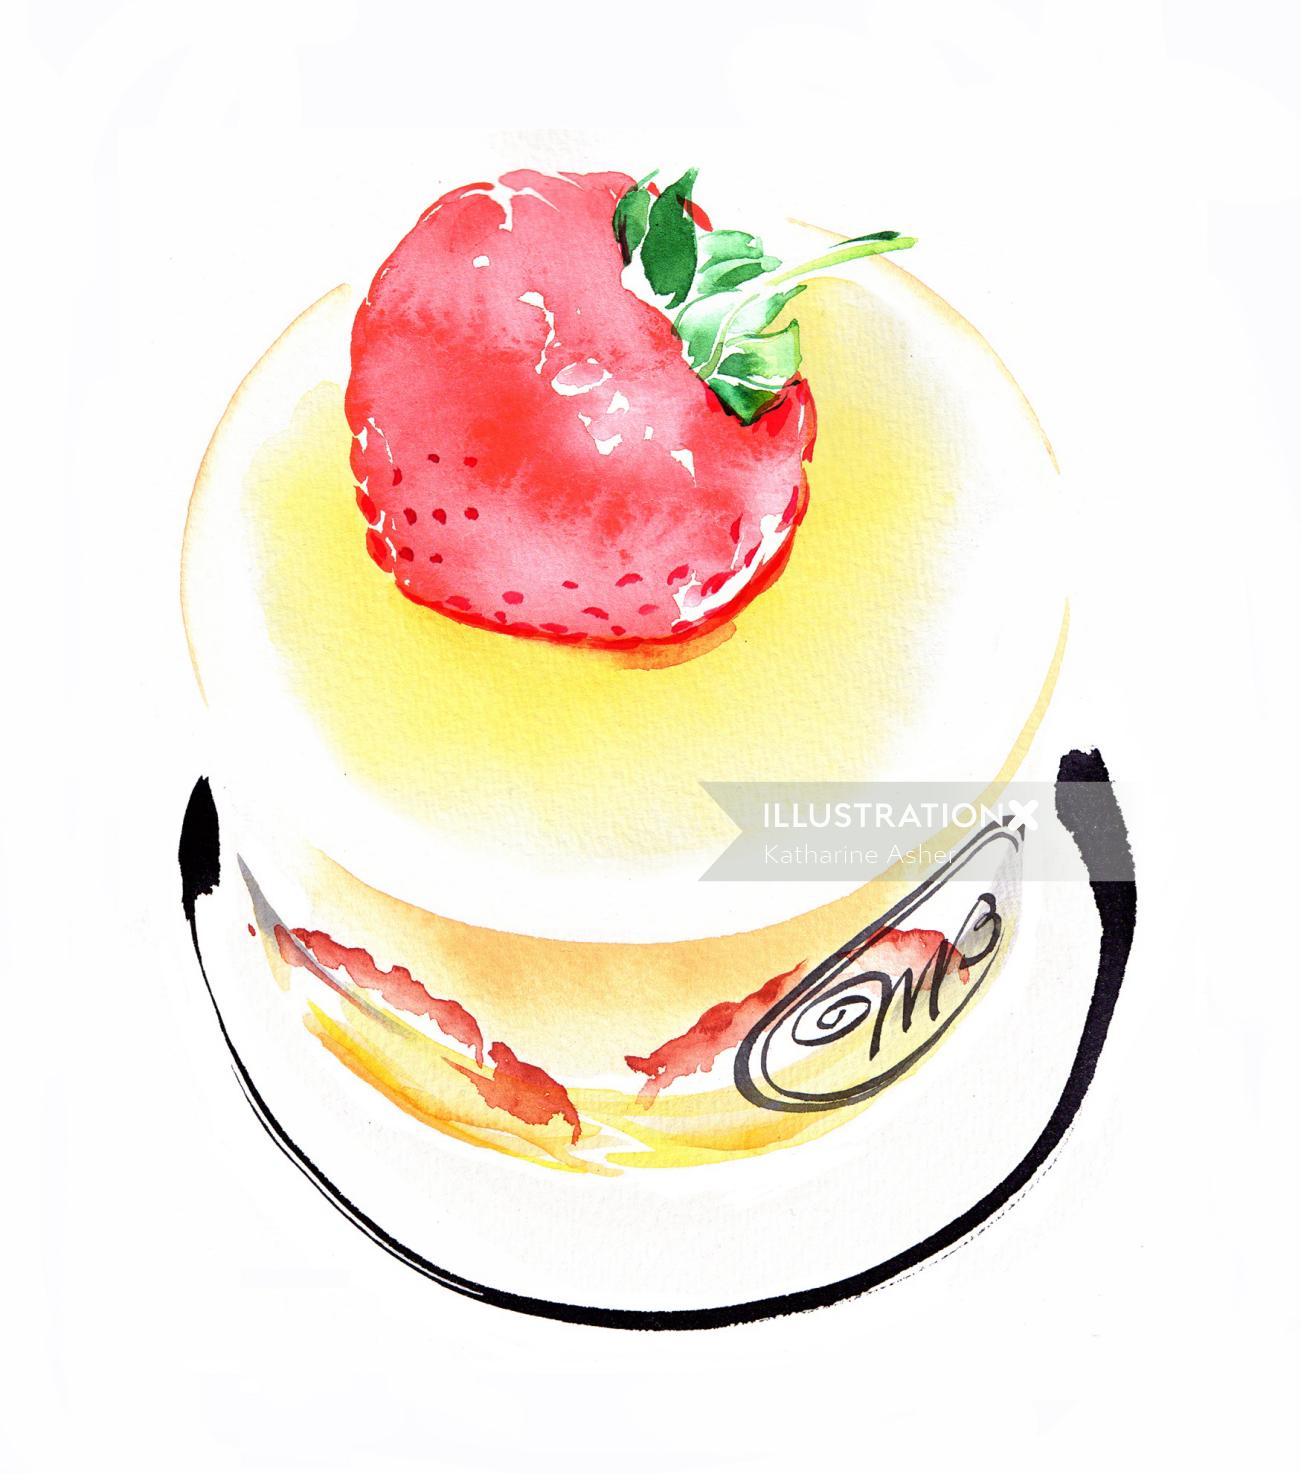 Illustration de gâteau par Katharine Asher